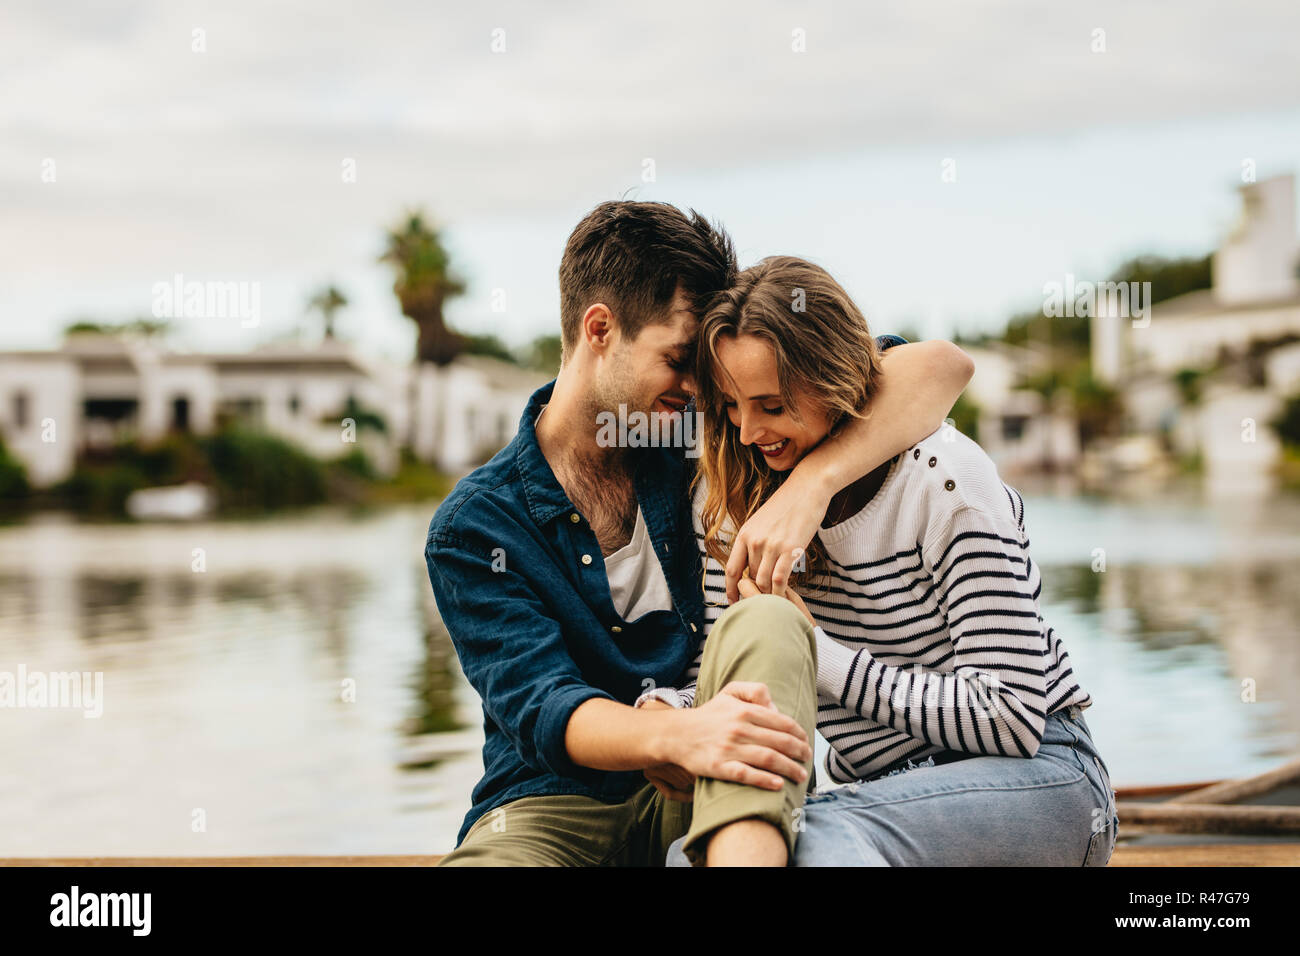 Jeune homme et femme dans une humeur romantique assis près d'un lac. Jeune homme assis avec sa petite amie près d'un lac avec son bras autour de son cou. Banque D'Images